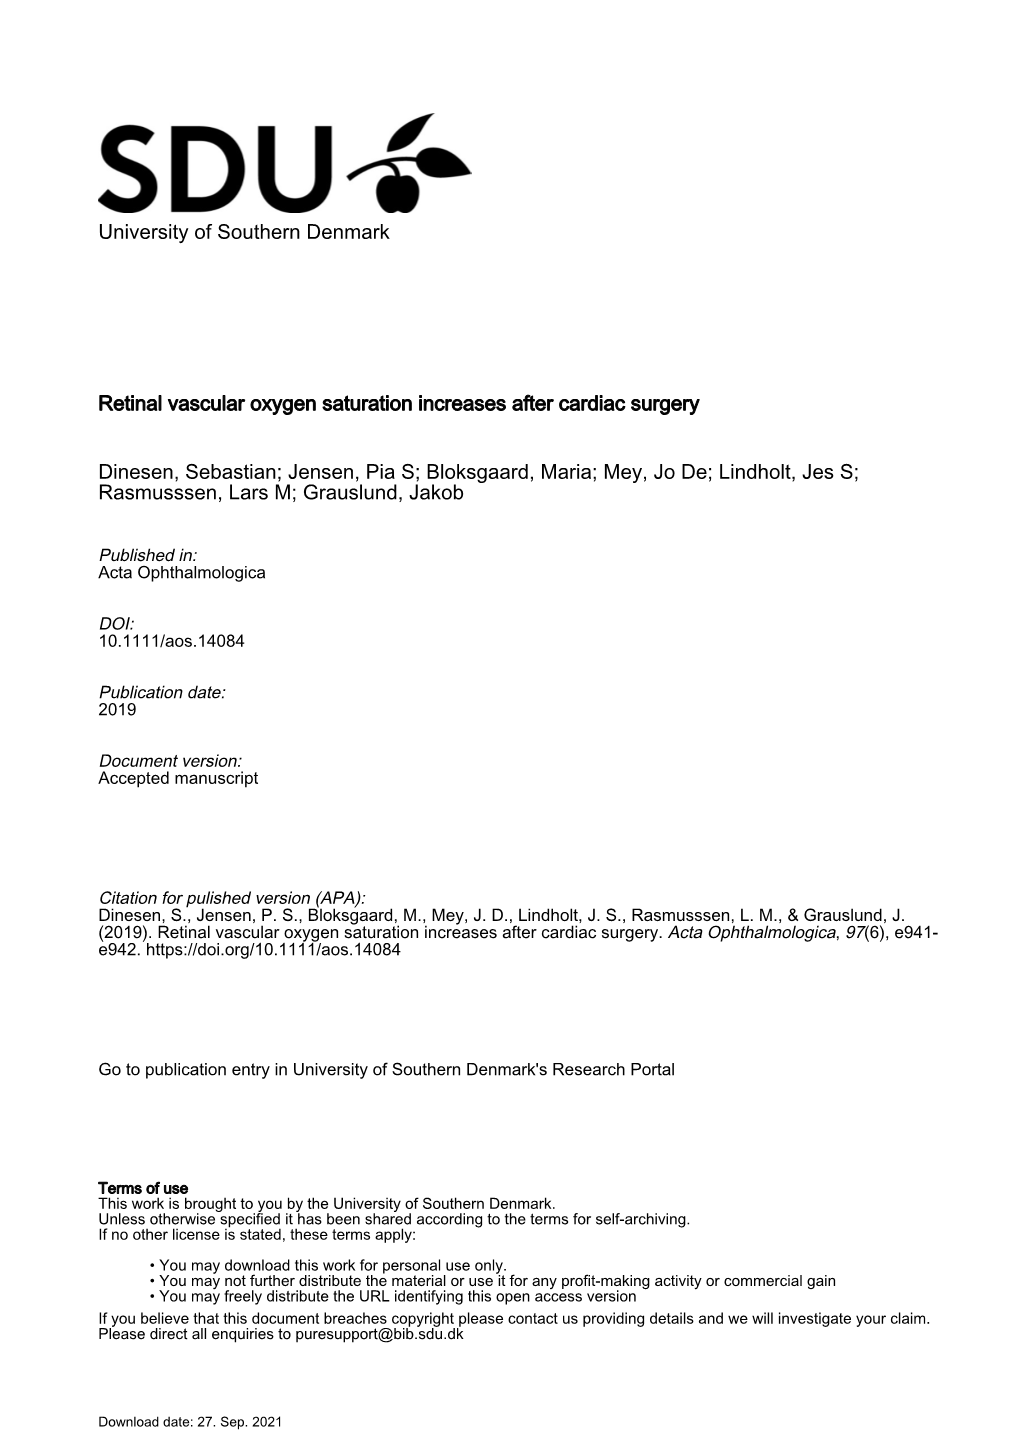 University of Southern Denmark Retinal Vascular Oxygen Saturation